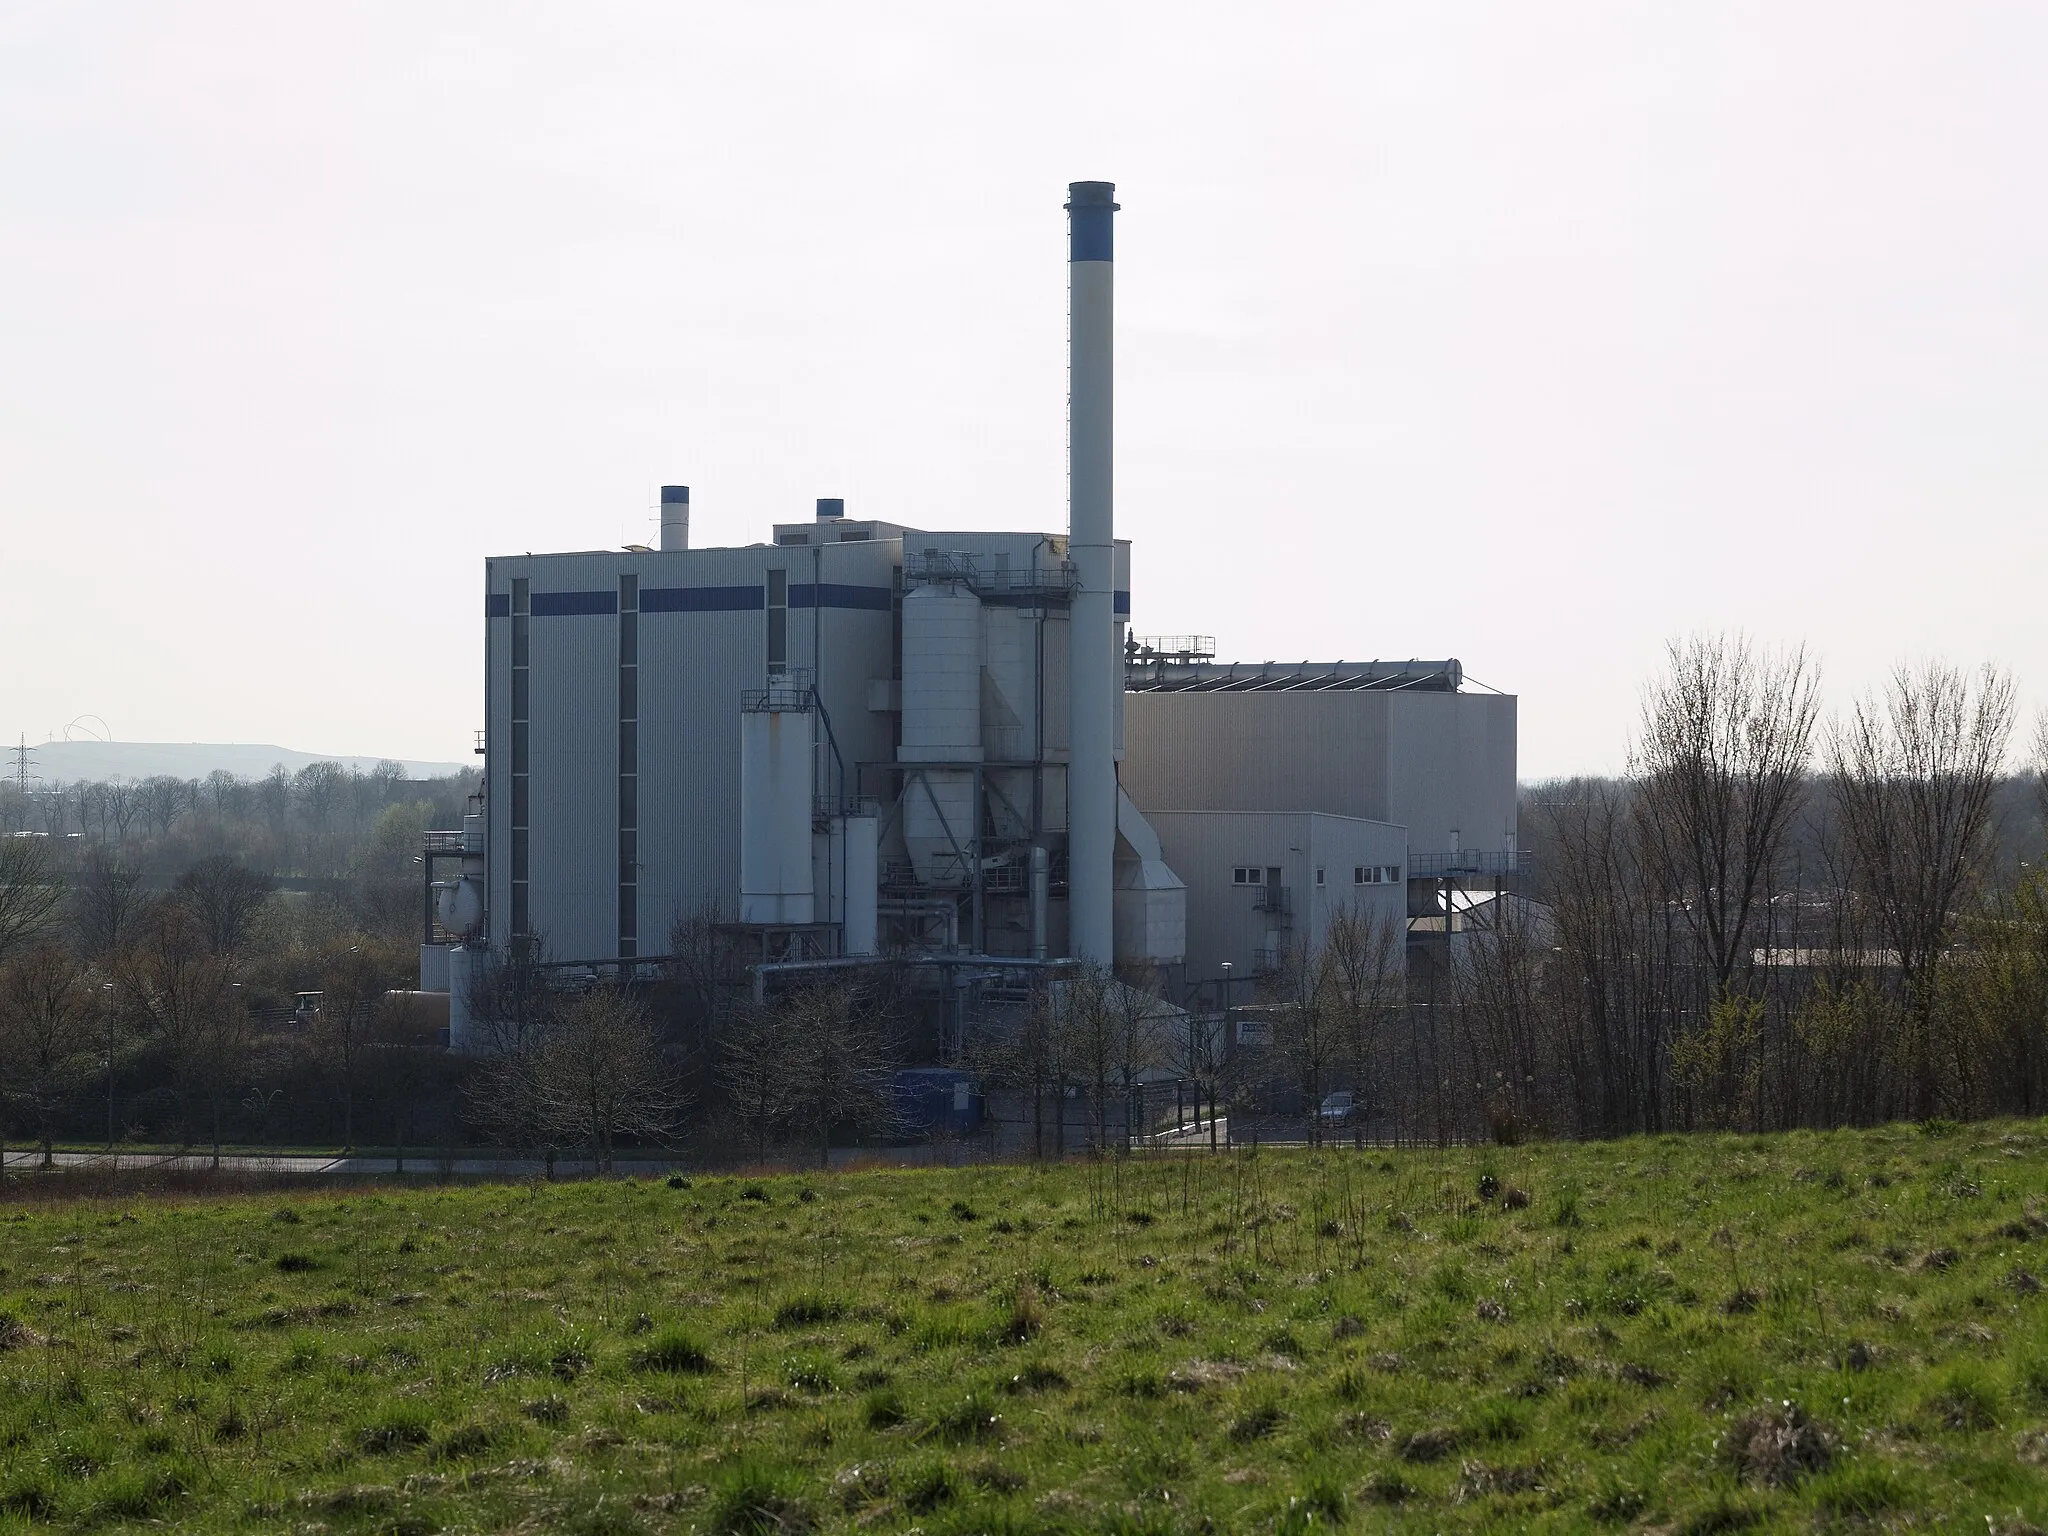 Photo showing: Recklighausen, Biomasse Heiz- und Kraftwerk de:Biomasse-Heizkraftwerk Recklinghausen im Ortsteil de:Suderwich, betrieben von der Ökotech GmbH